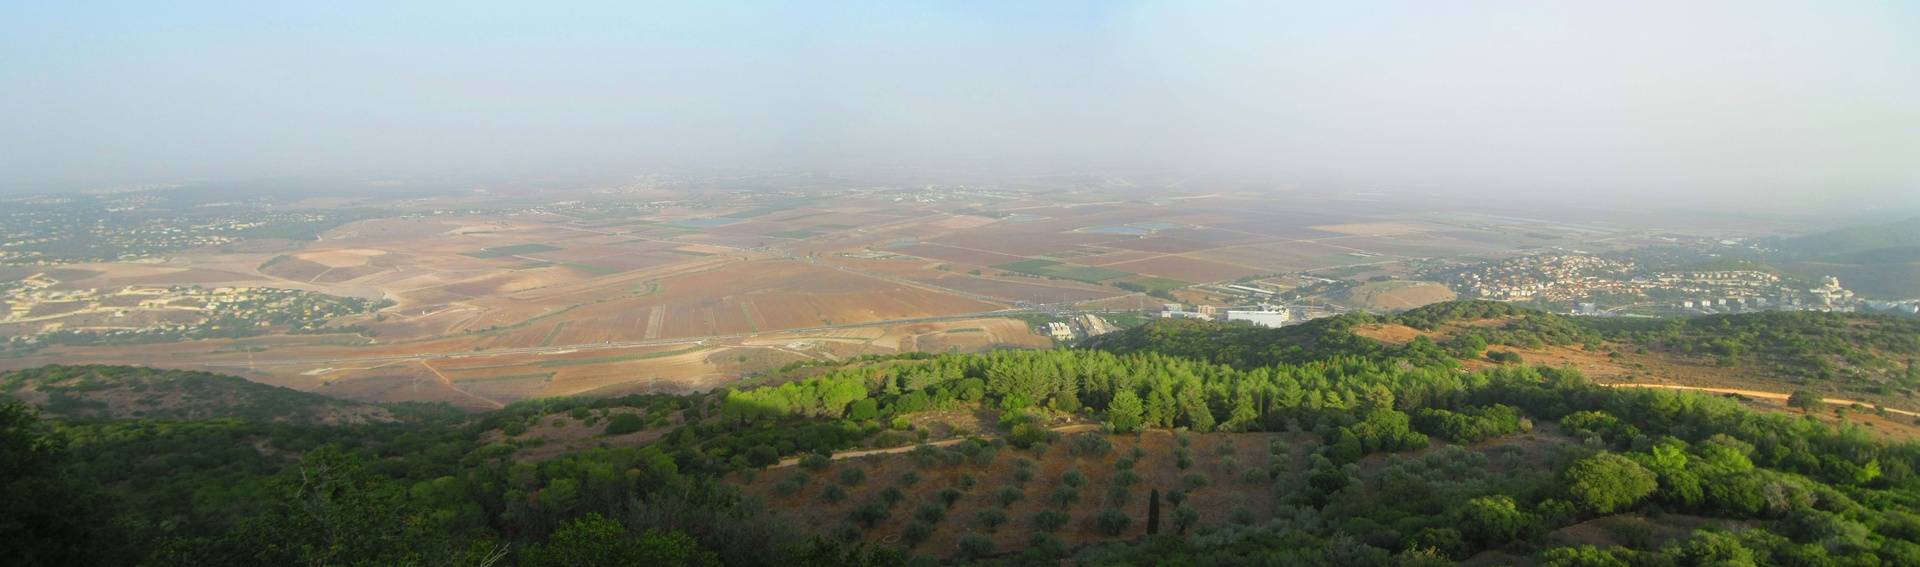 Jezreel Valley Panorama